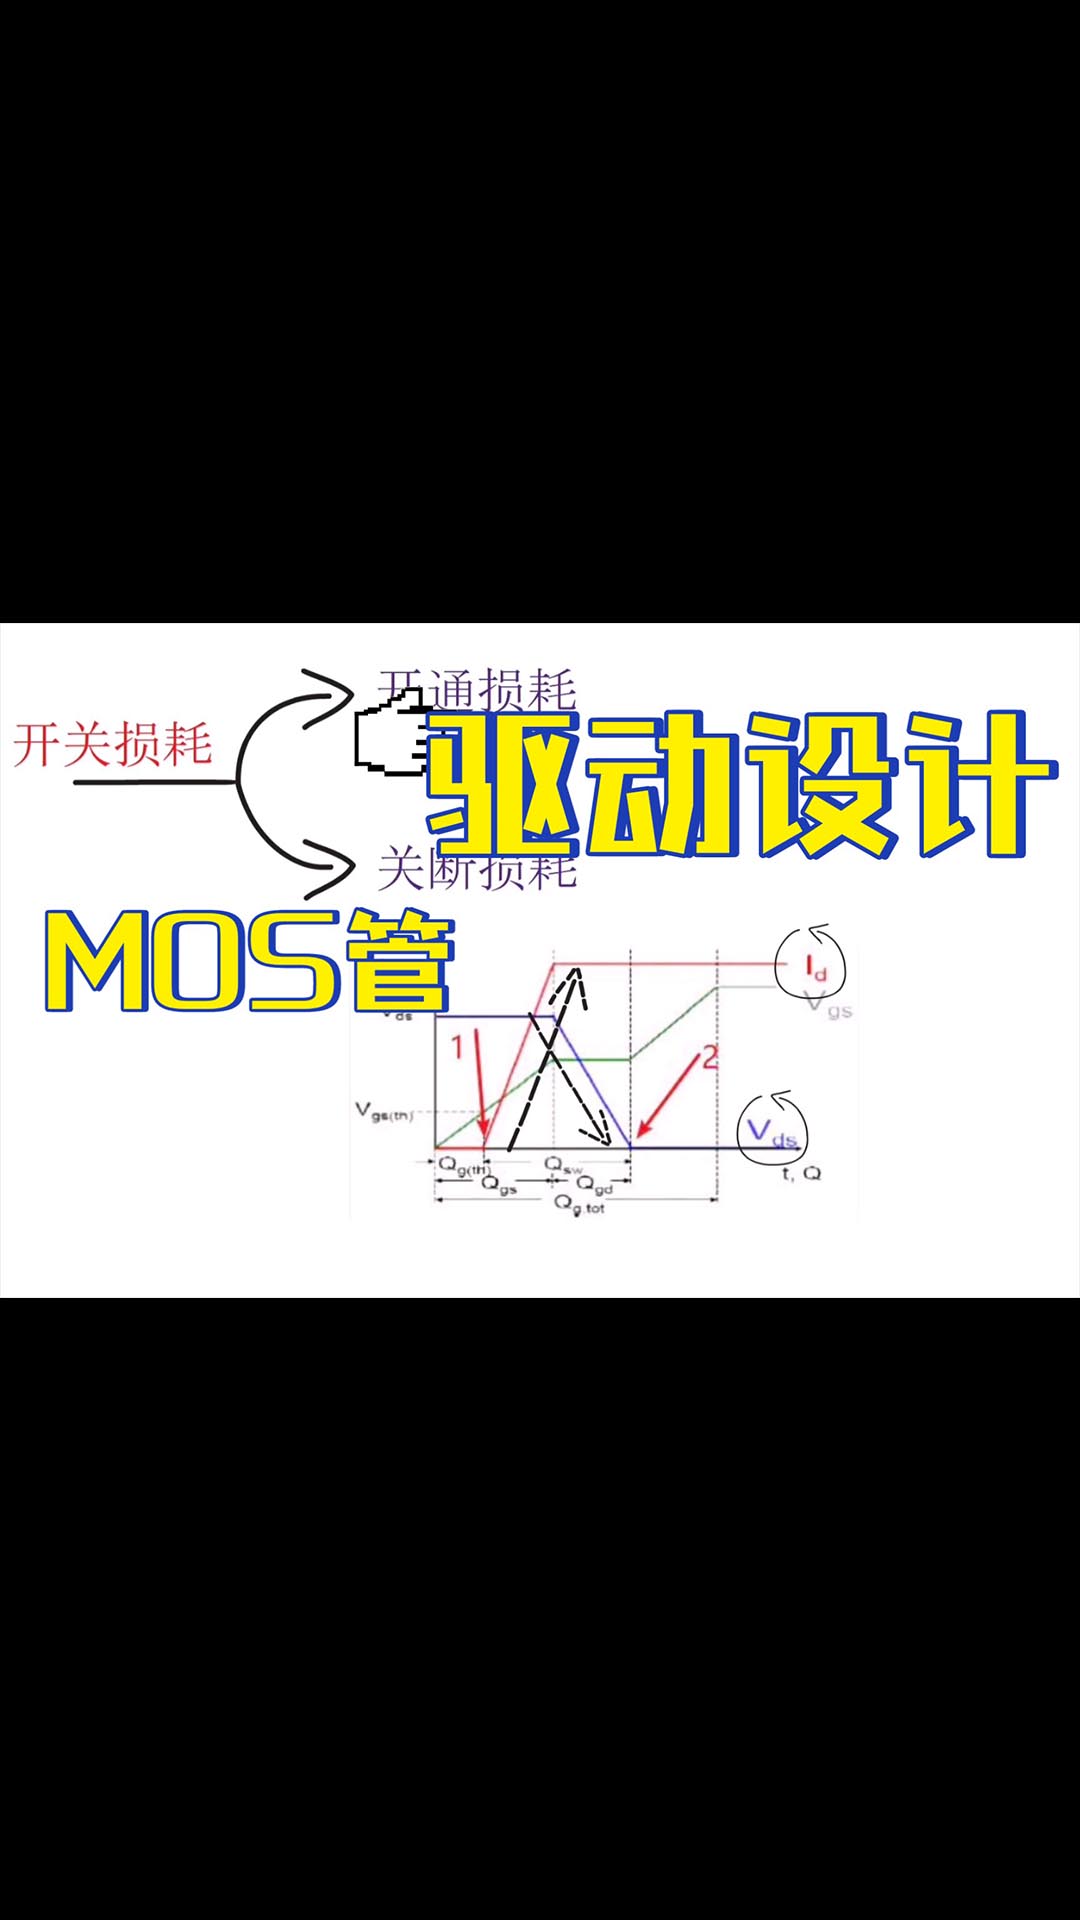 《模电》5-4、MOS管的驱动设计